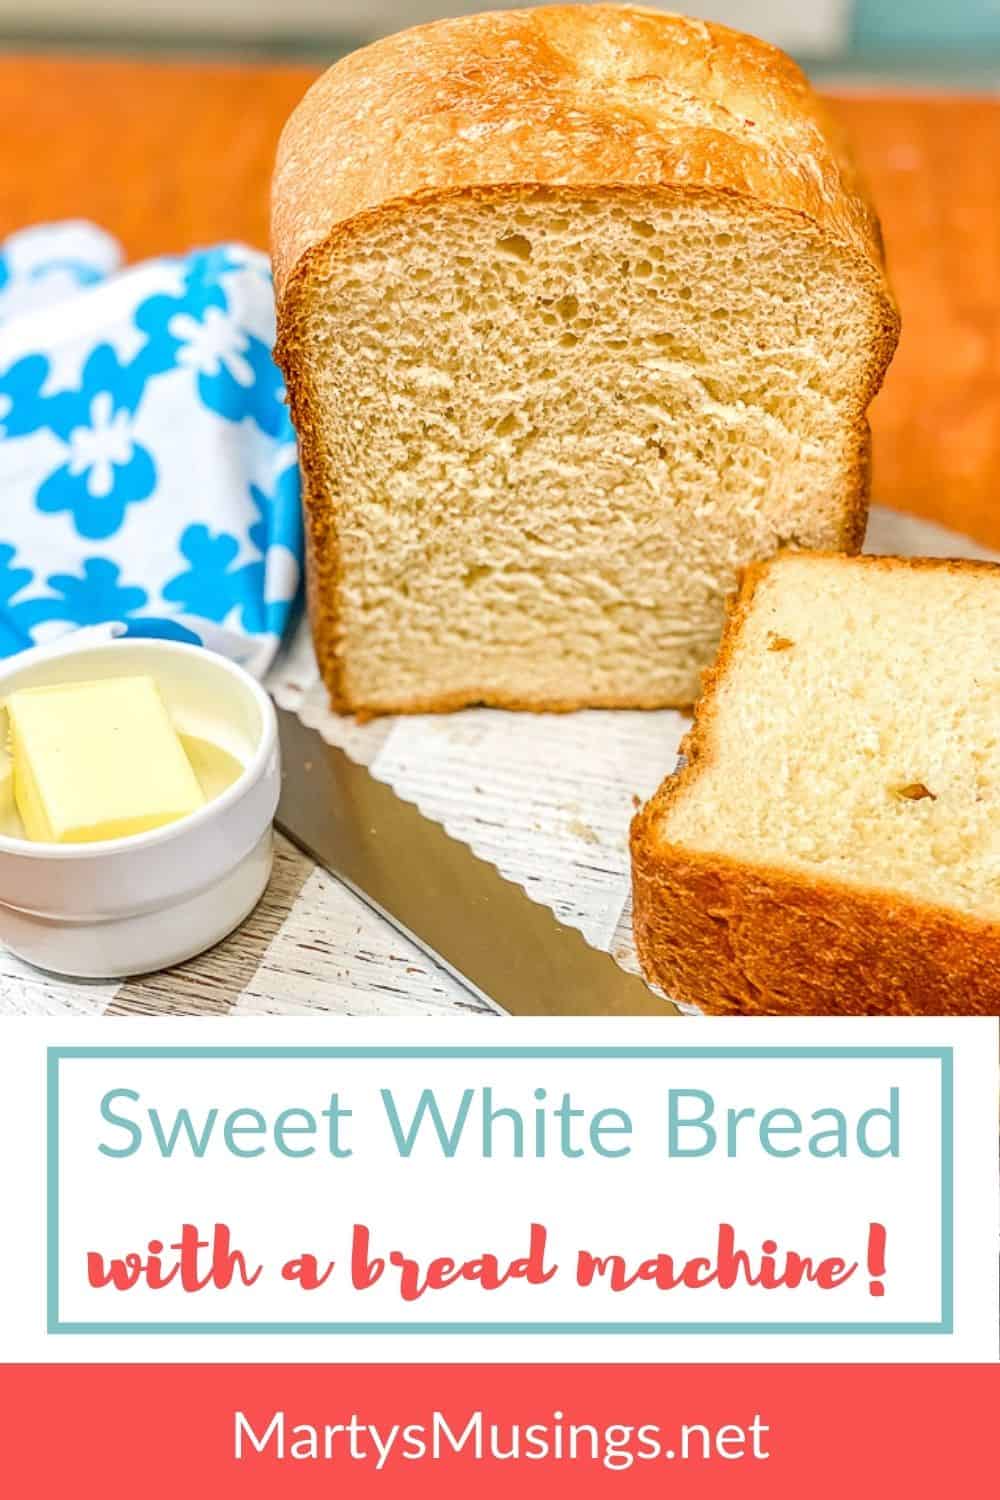 https://www.martysmusings.net/wp-content/uploads/2013/04/Sweet-White-Bread.jpg